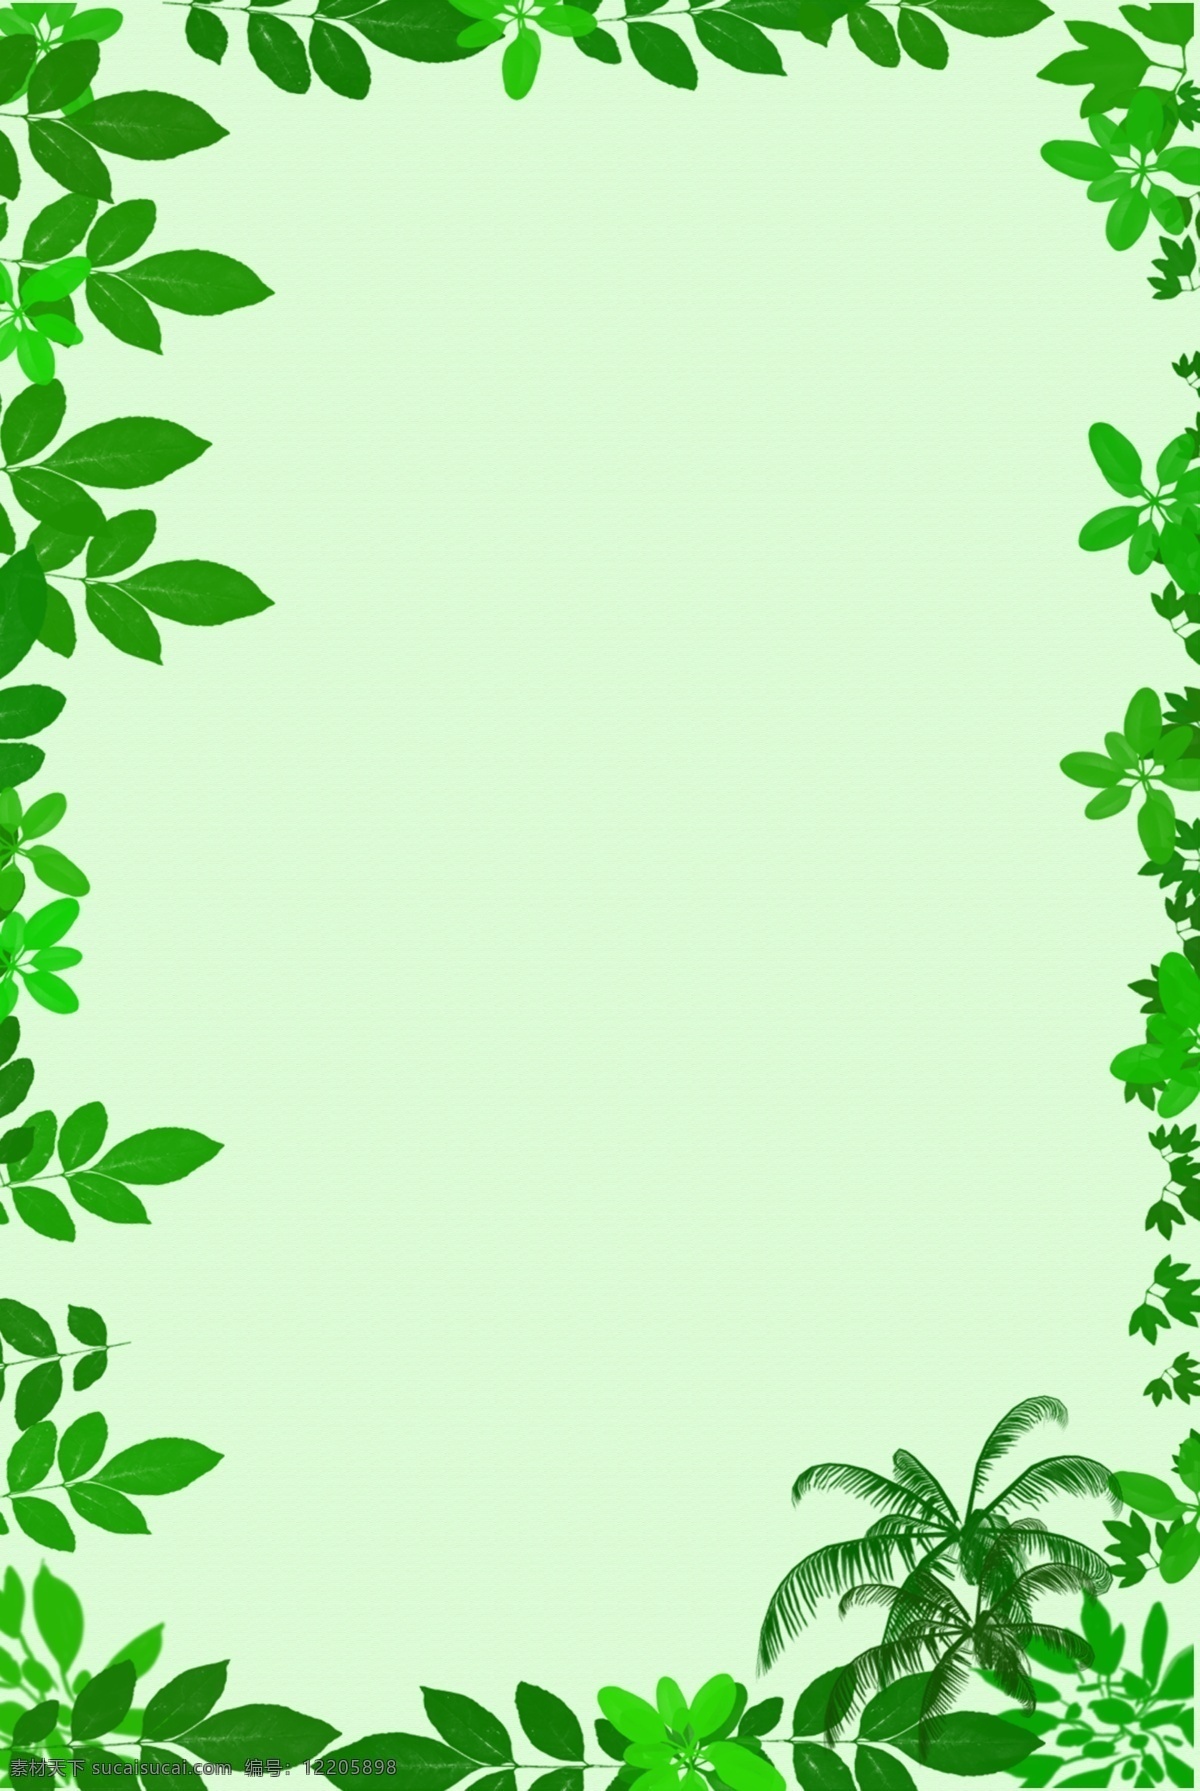 小 清新 绿色 叶子 边框 背景 小清新 边框背景 植物边框 立春 春天 卡通 简约